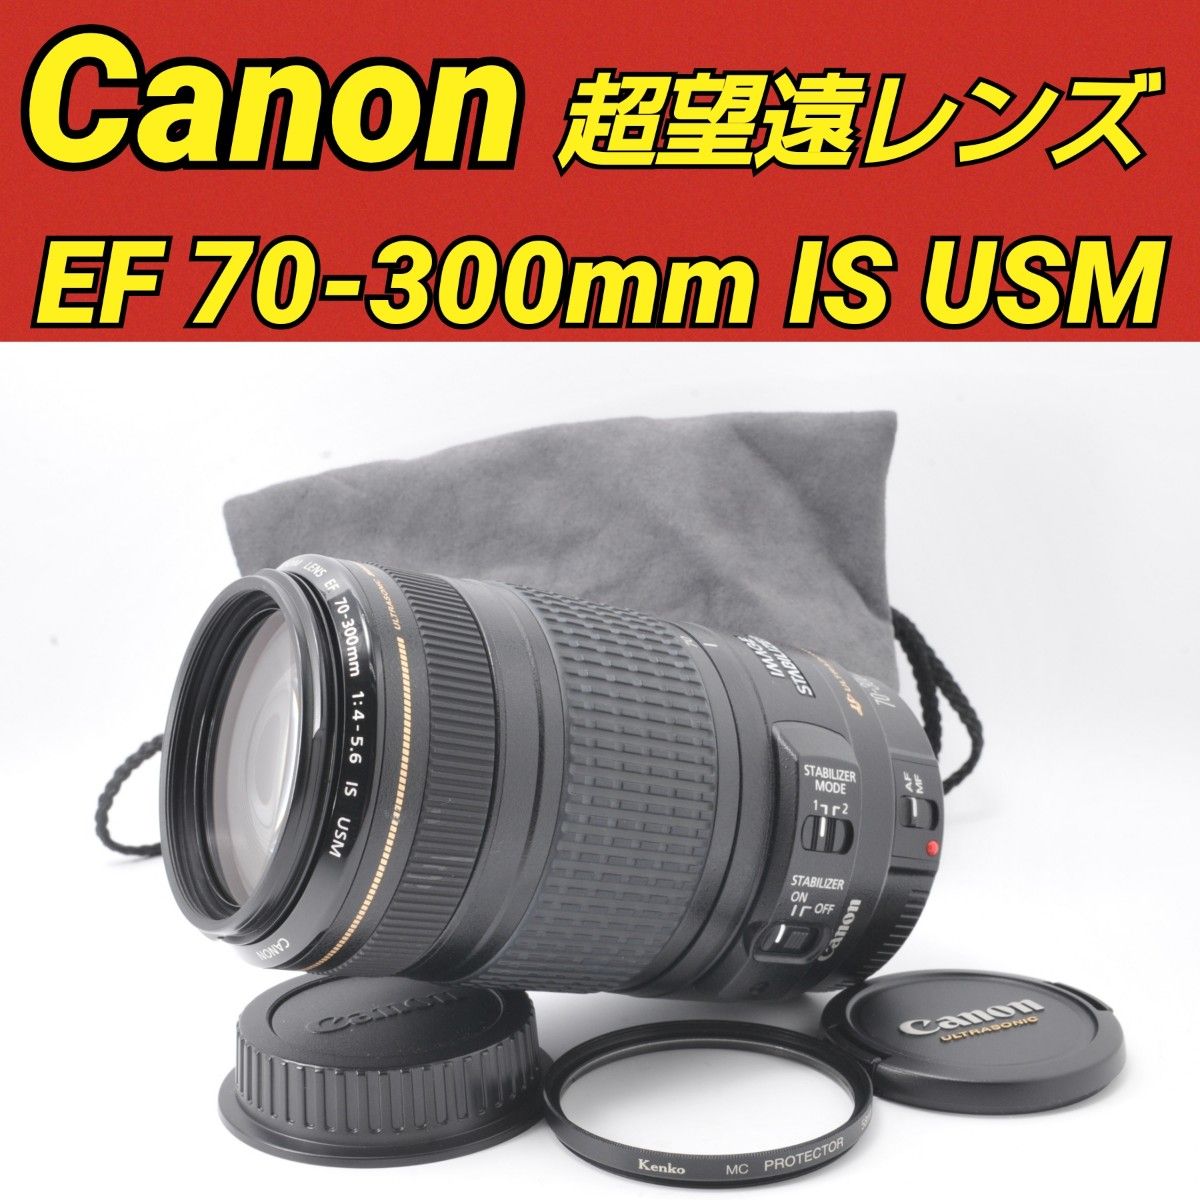 Canon EF70-300mm F4-5.6 IS USM キヤノン 手ぶれ補正 高級望遠レンズ レンズフード ポーチ付き 